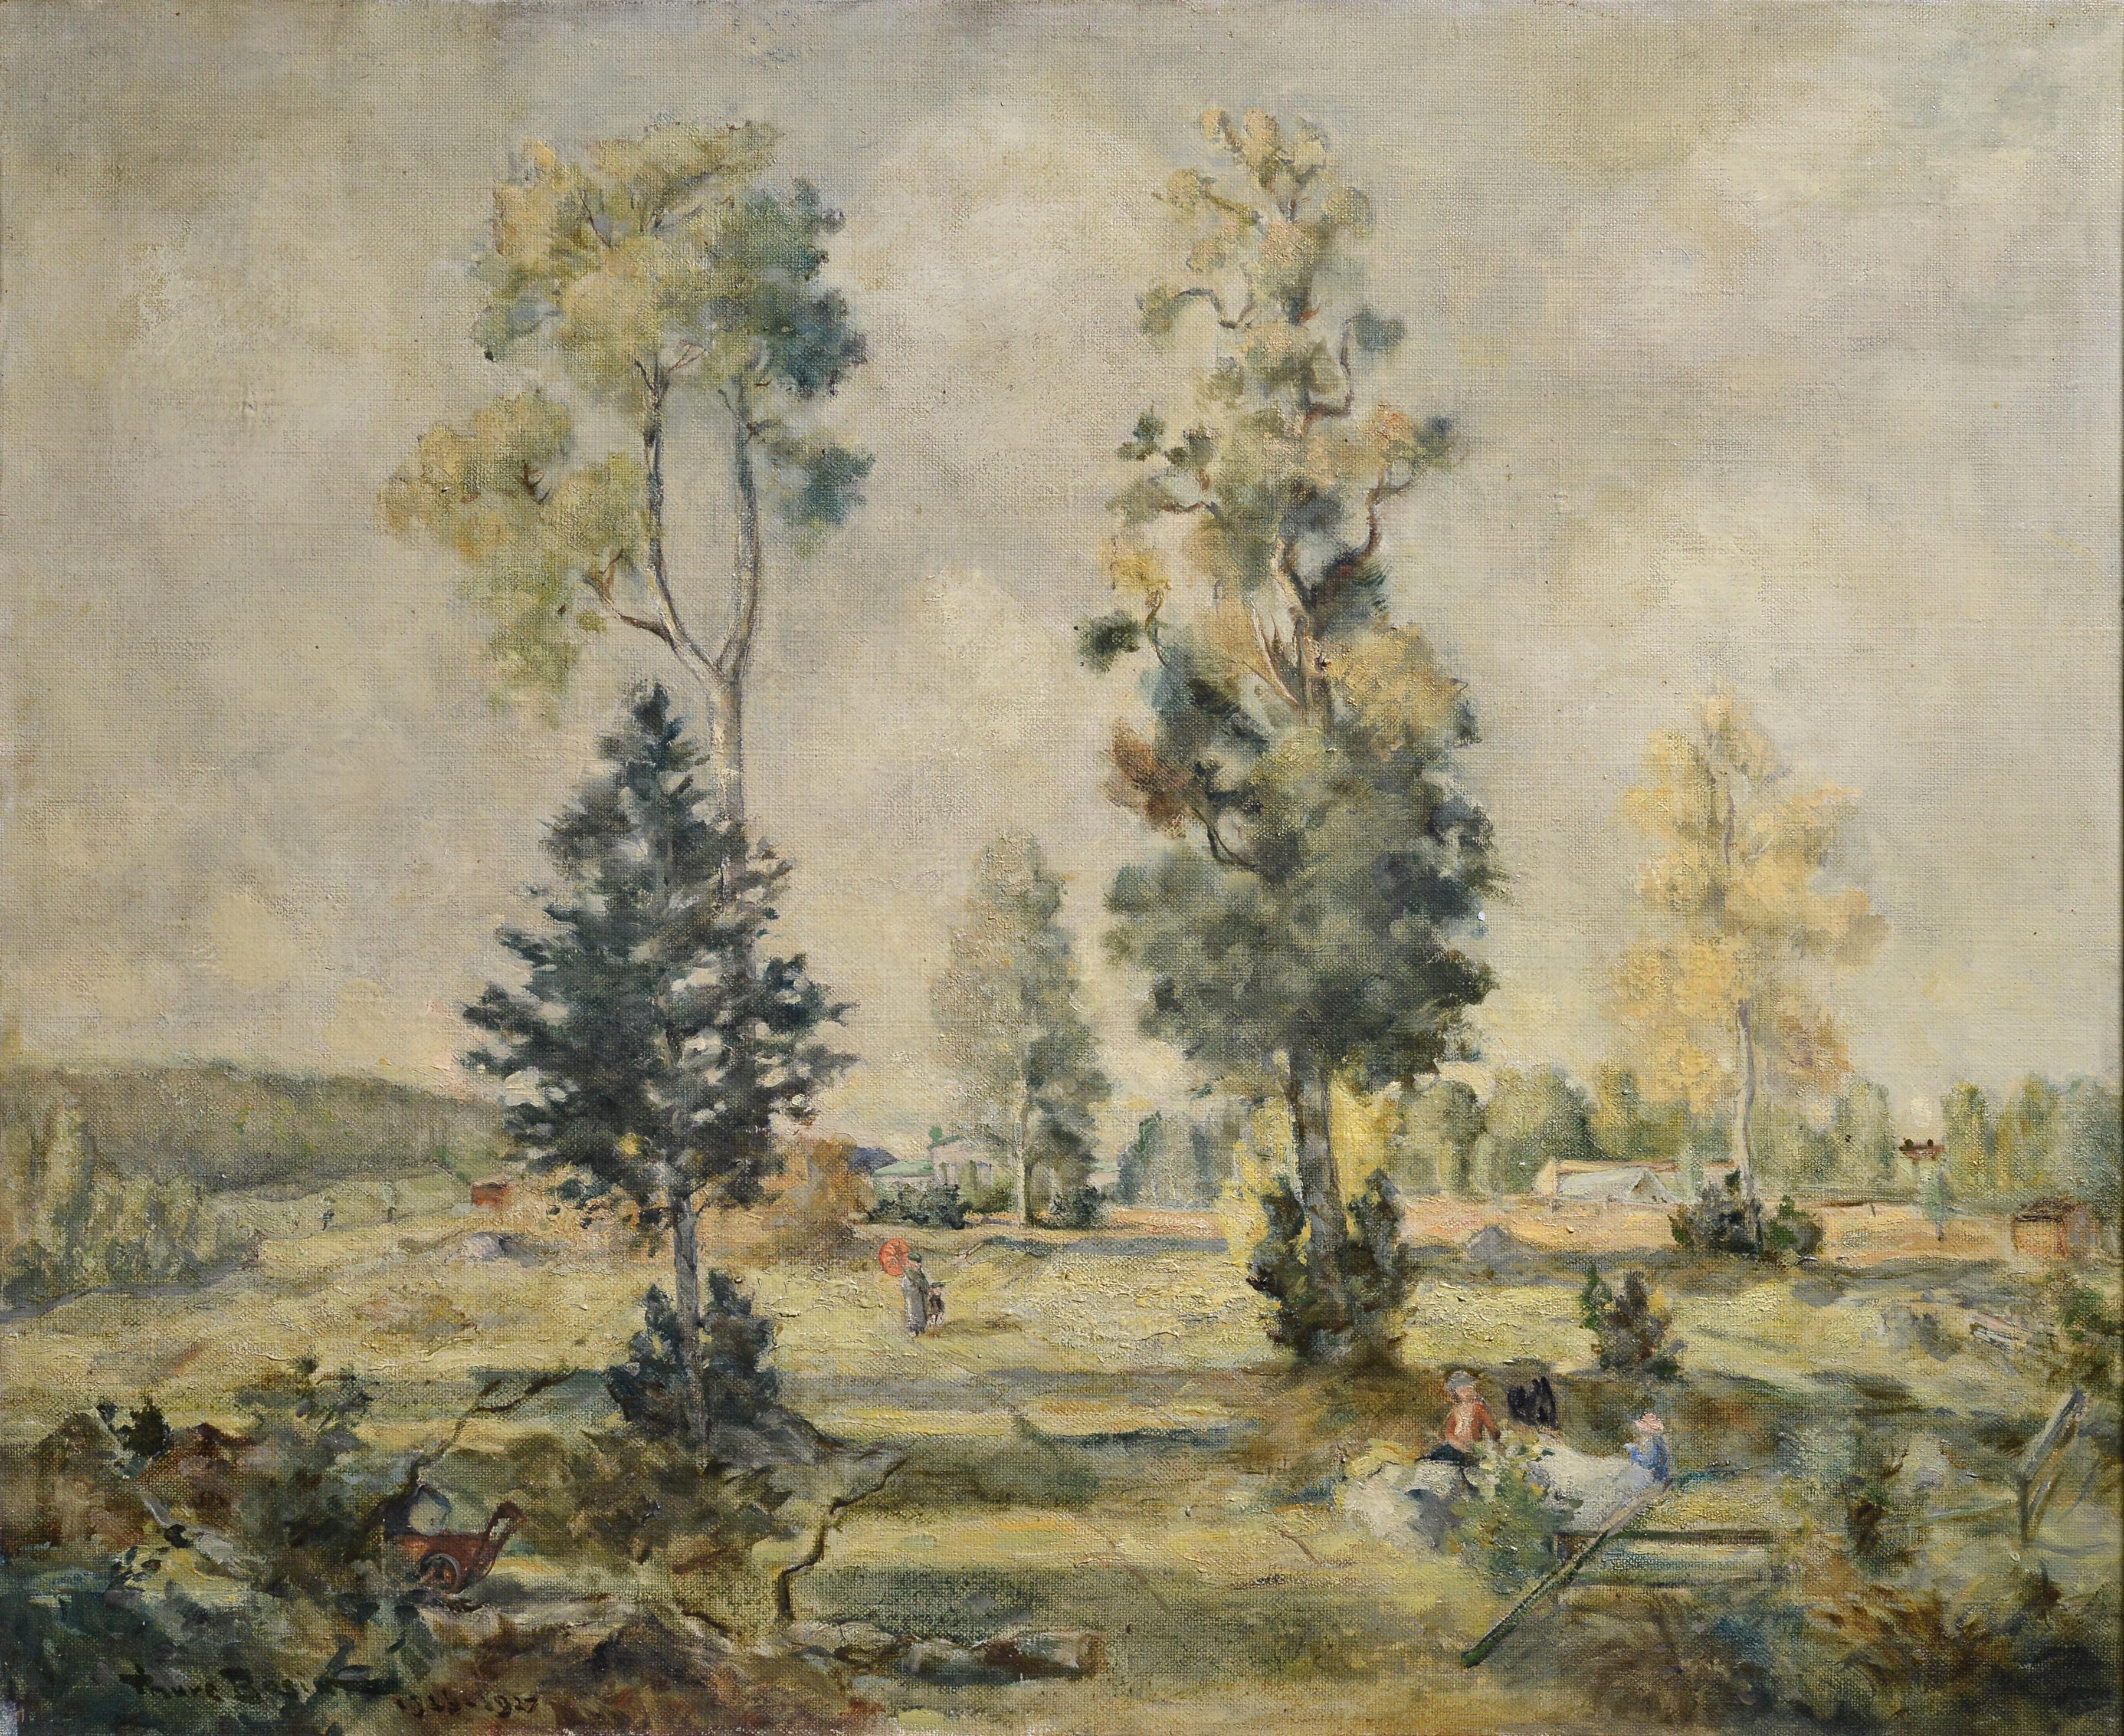 Peinture à l'huile de l'artiste suédois « Serene Day at a Country Manor Landscape 1927 » - Painting de Ture Axelsson Bosin